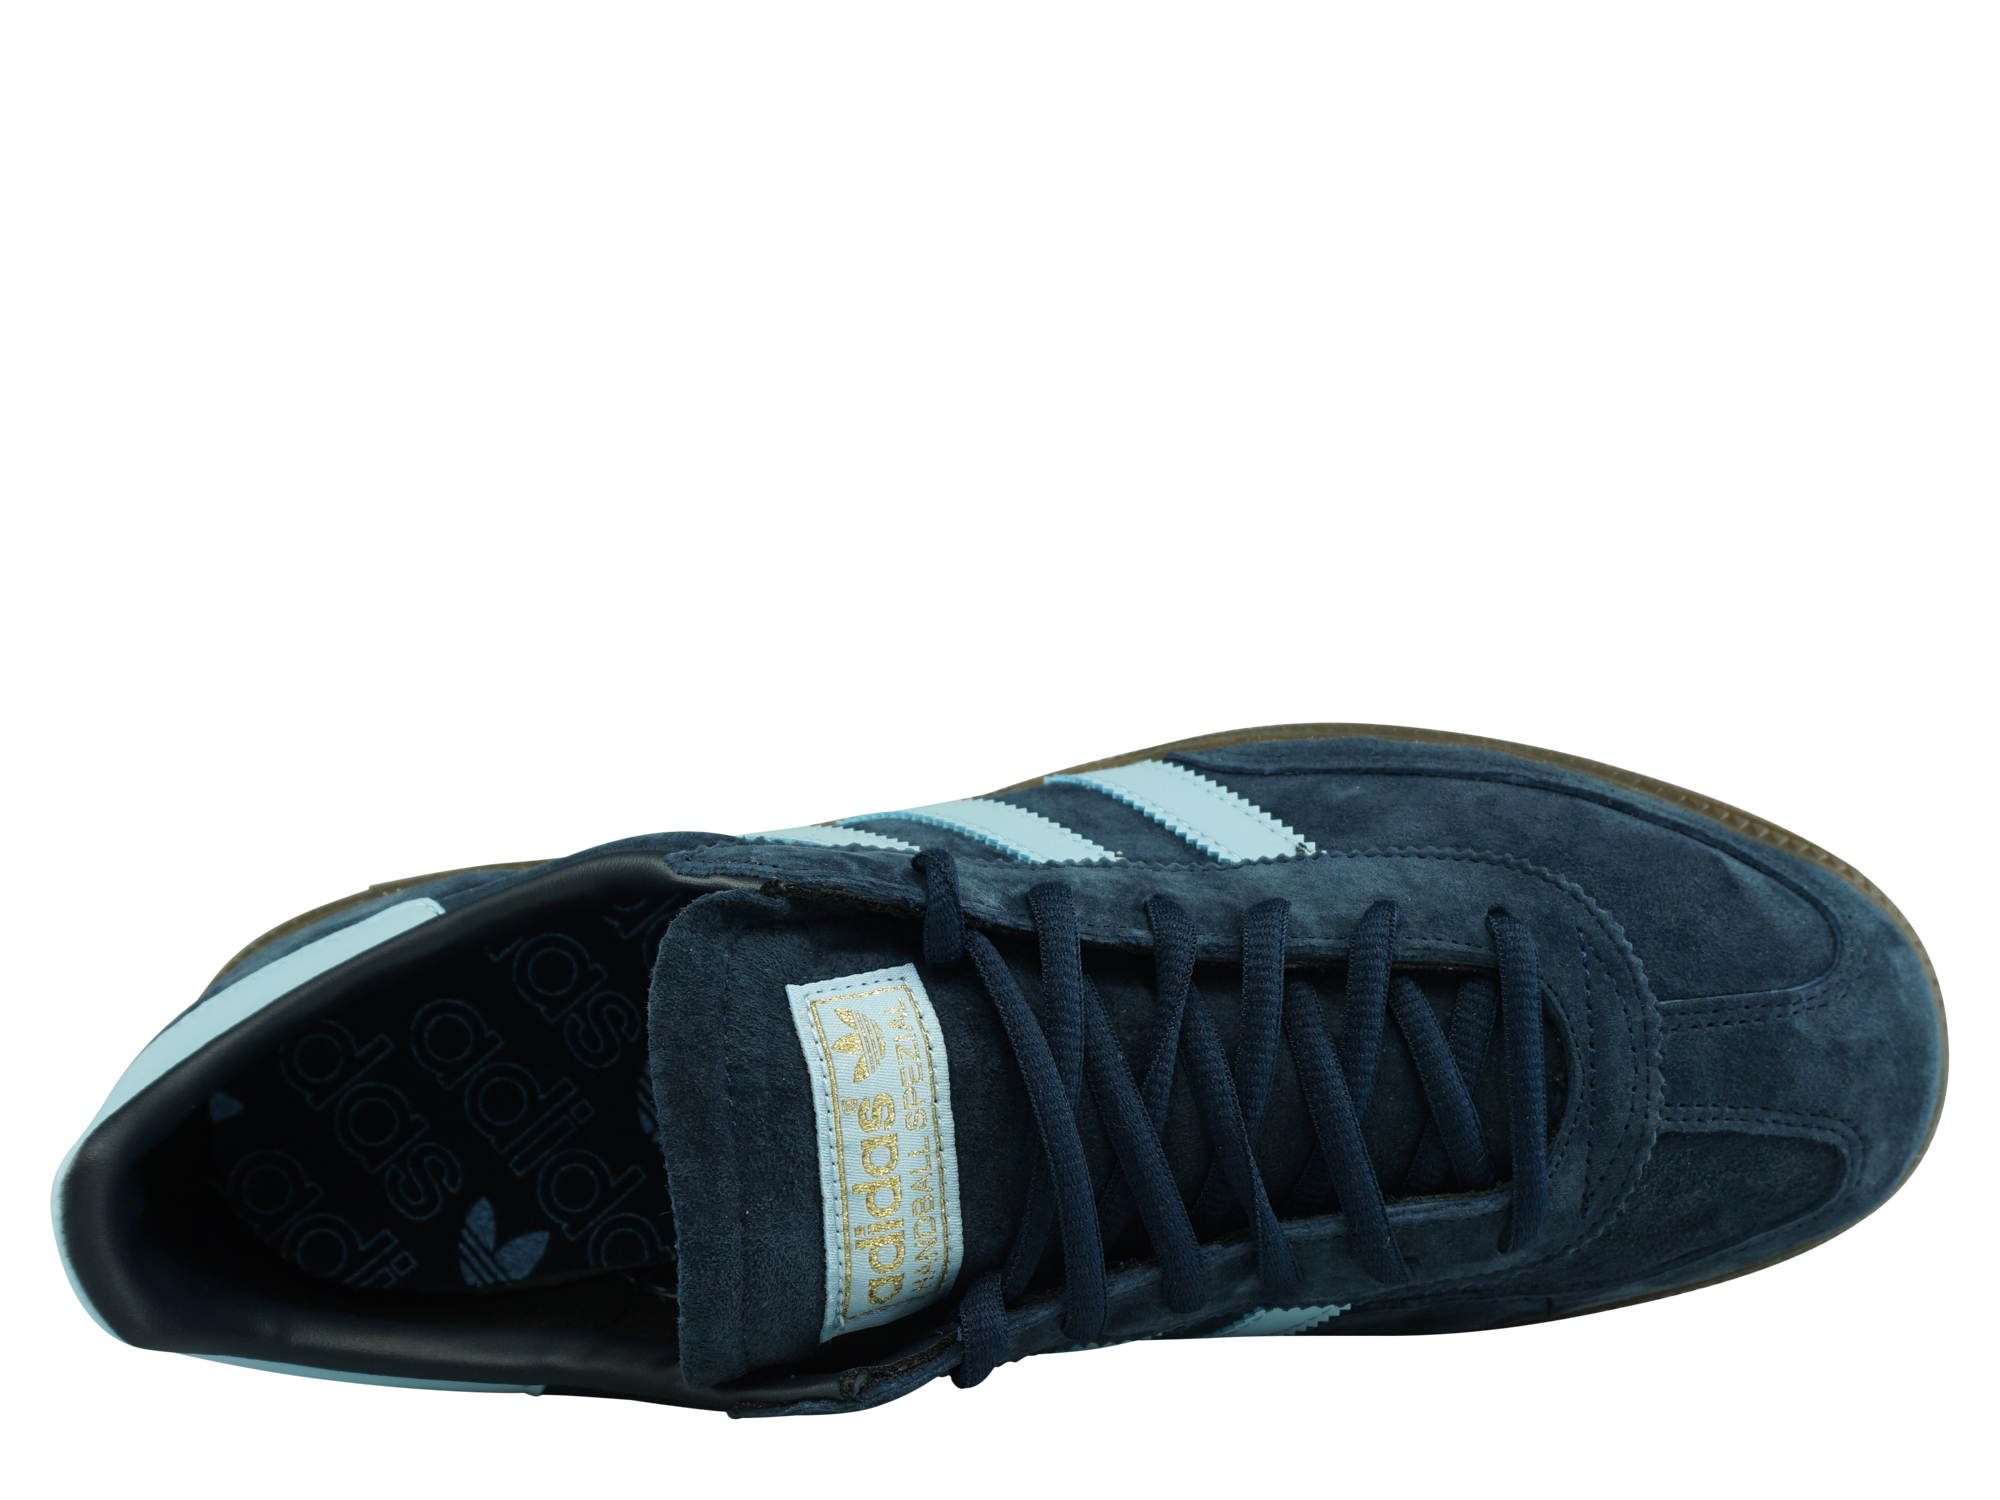 Adidas Originals Handball Spezial Herren Sneaker